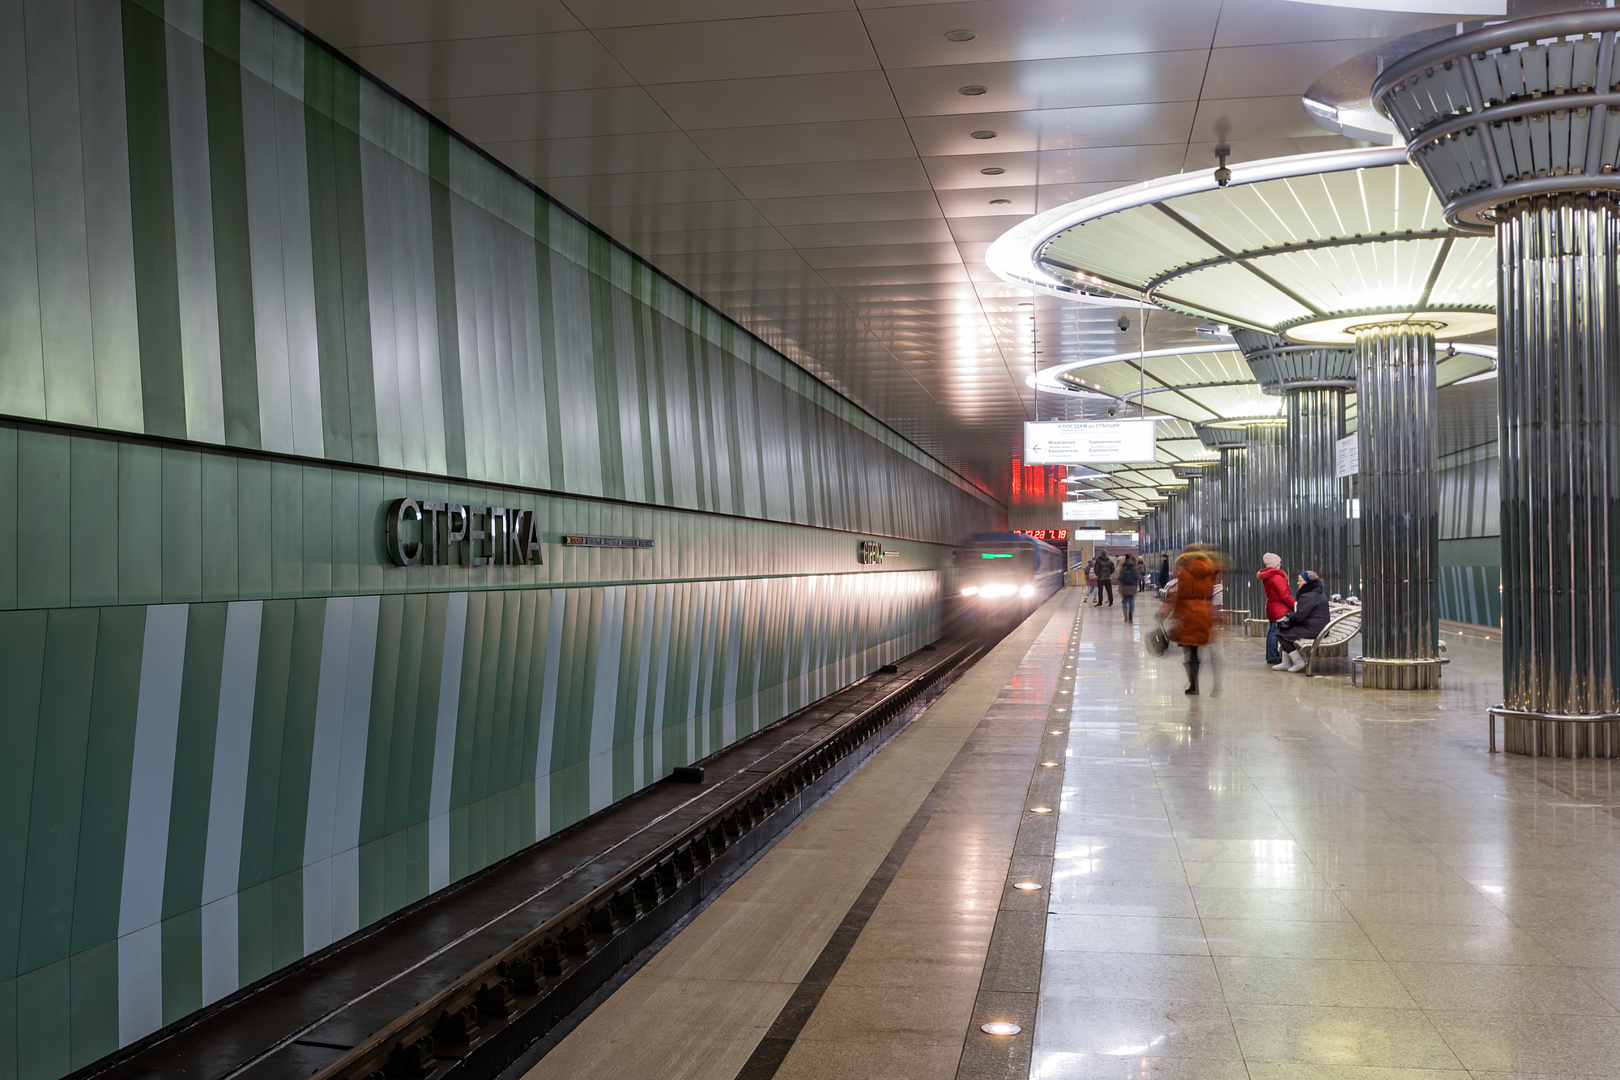 Станция метро «Стрелка» была открыта перед самым ЧМ-2018 – и достойно справилась со столь важным экзаменом.